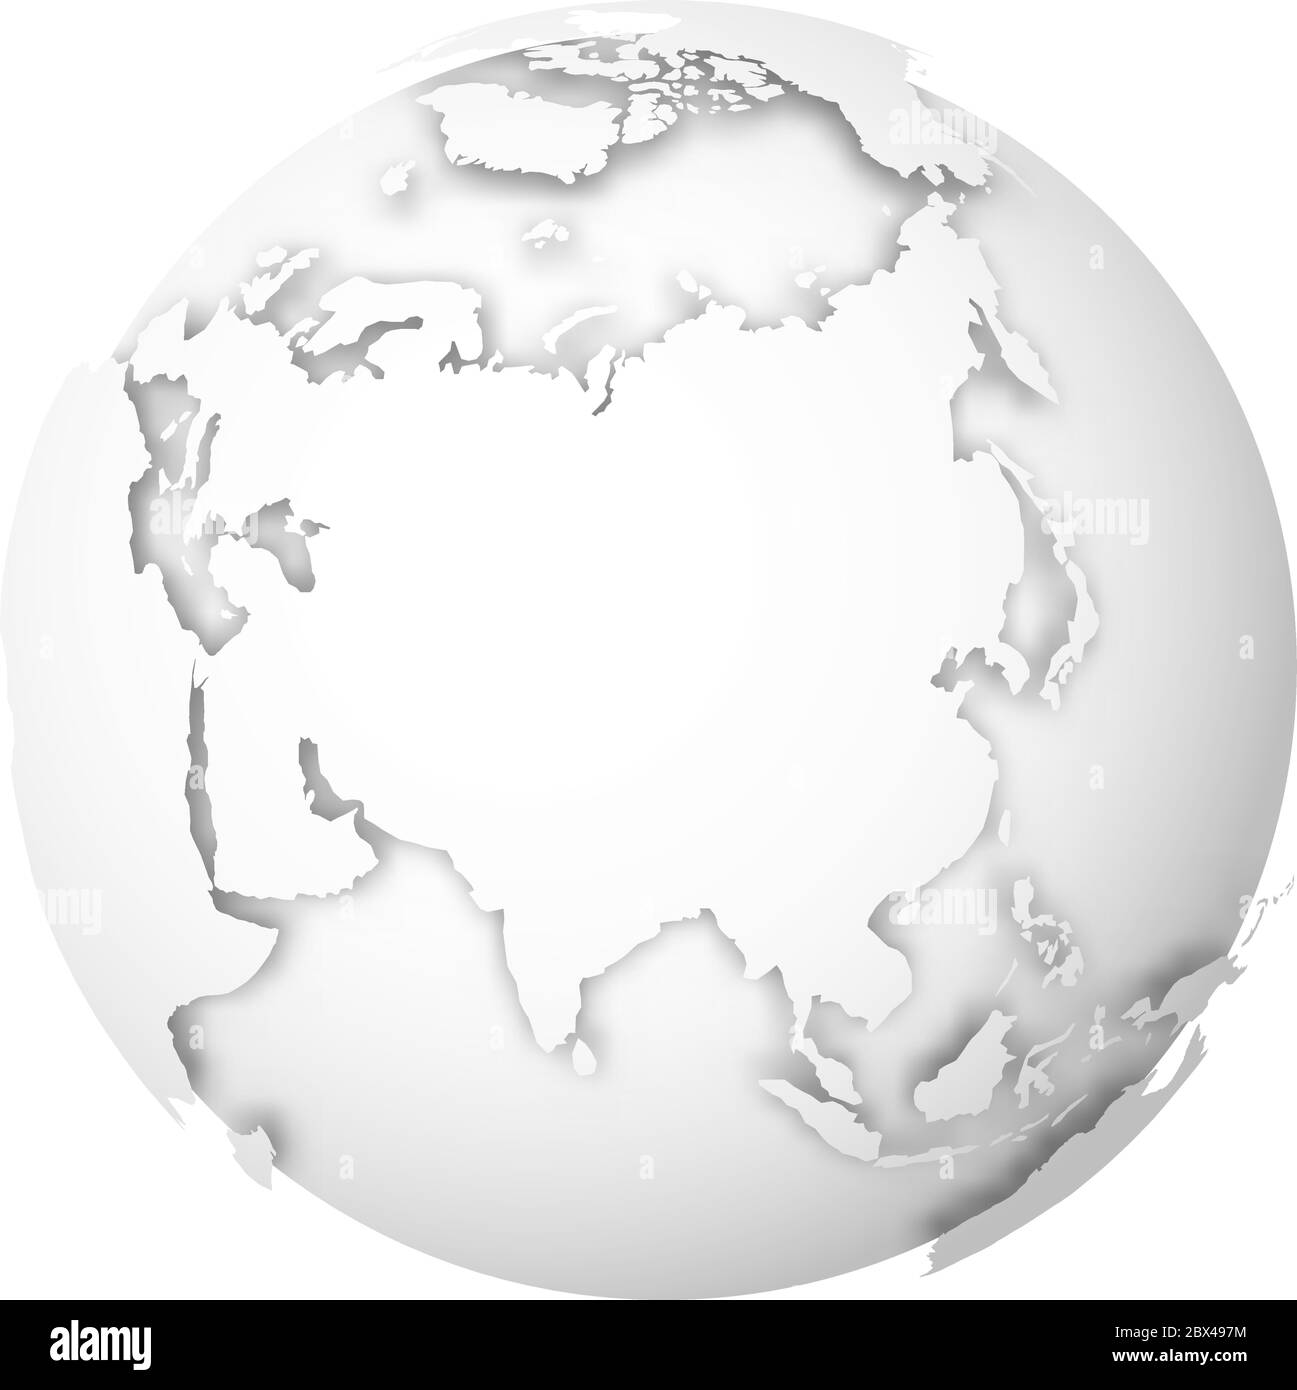 Globe terrestre. Carte du monde en 3D avec des terres blanches qui jettent des ombres sur les mers et les océans gris clair. Illustration vectorielle. Illustration de Vecteur